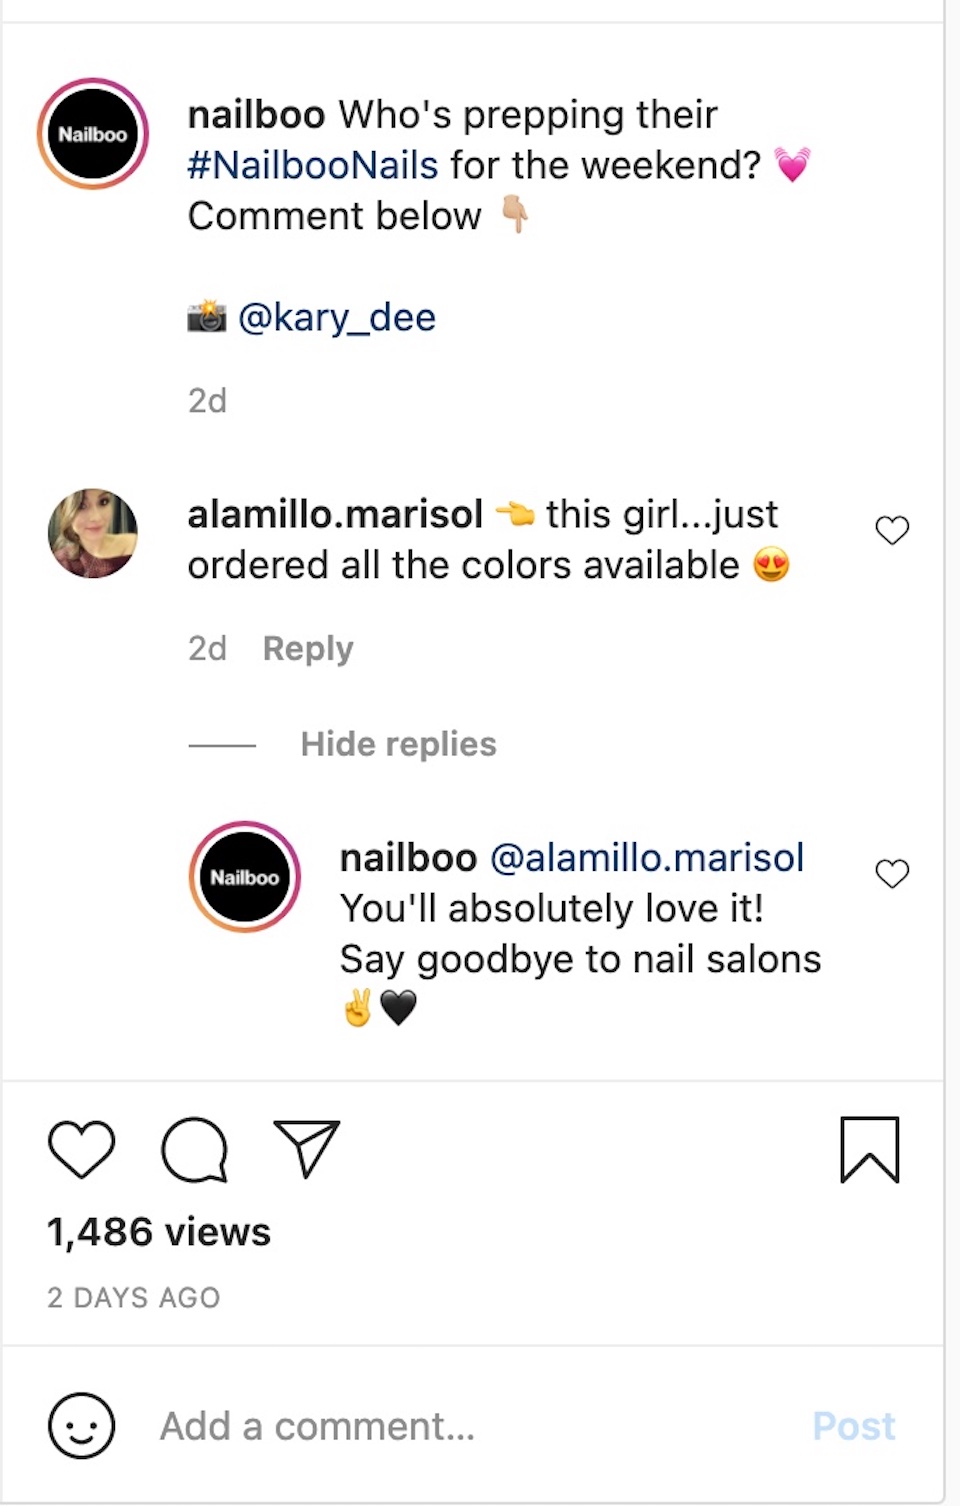 Компания по производству товаров для ногтей Nailboo изображена взаимодействующей с комментатором публикации в ее аккаунте в Instagram.